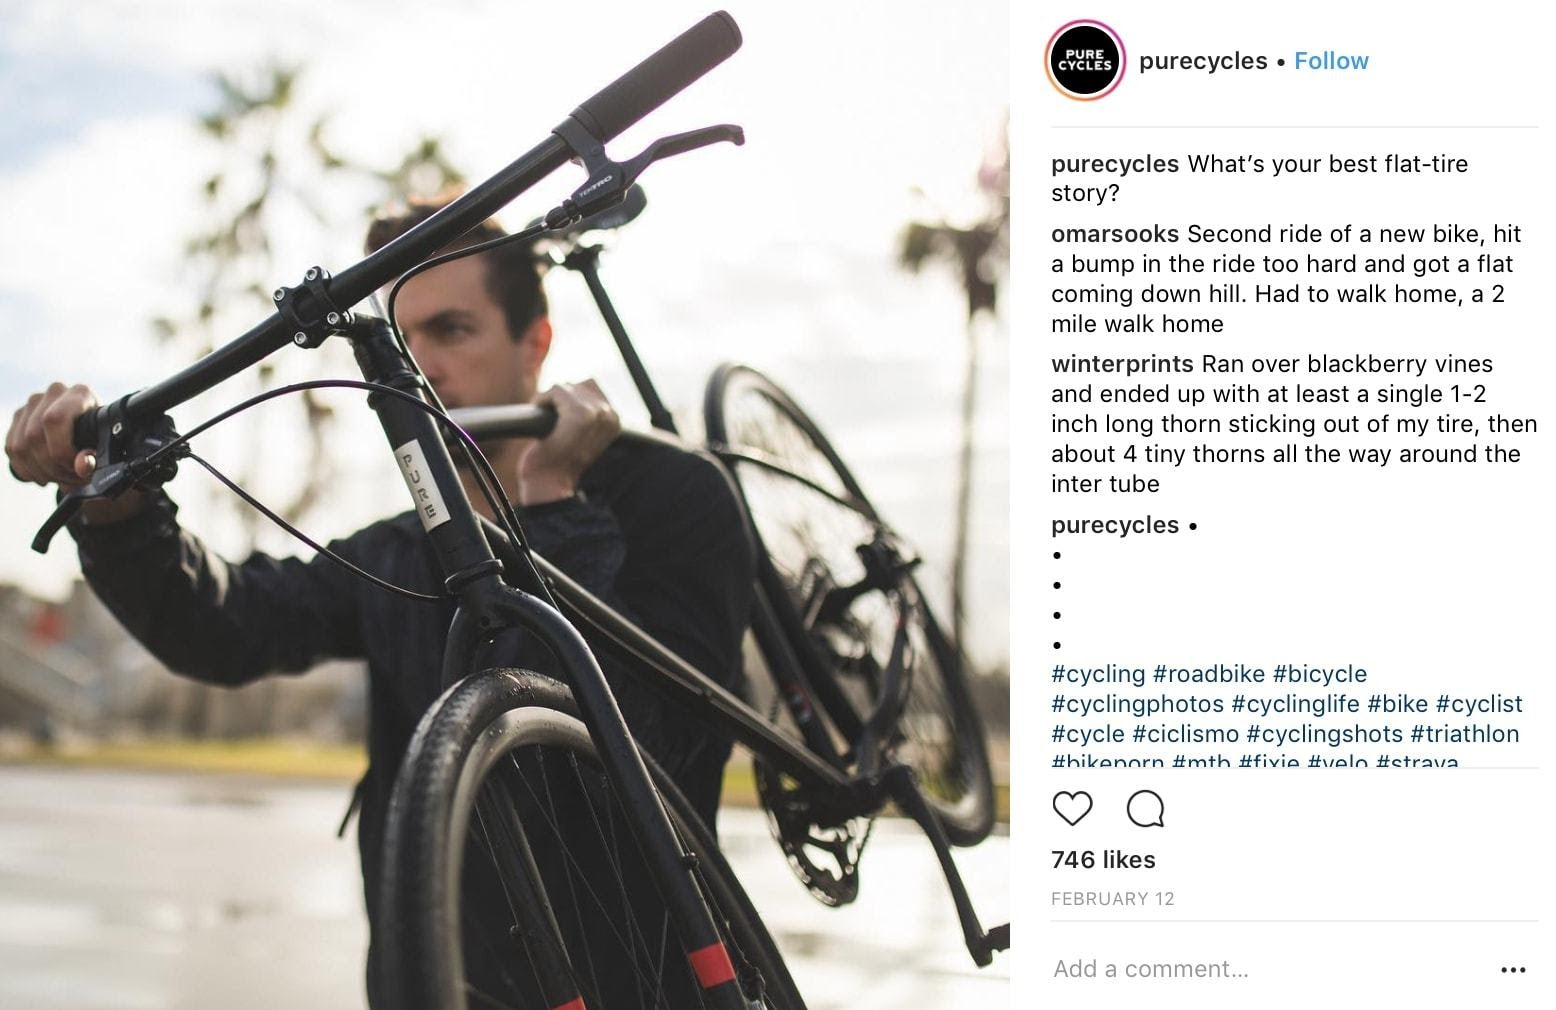 Idée de post Instagram de Purecycles demandant aux utilisateurs de partager leurs meilleures histoires de pneus crevés.